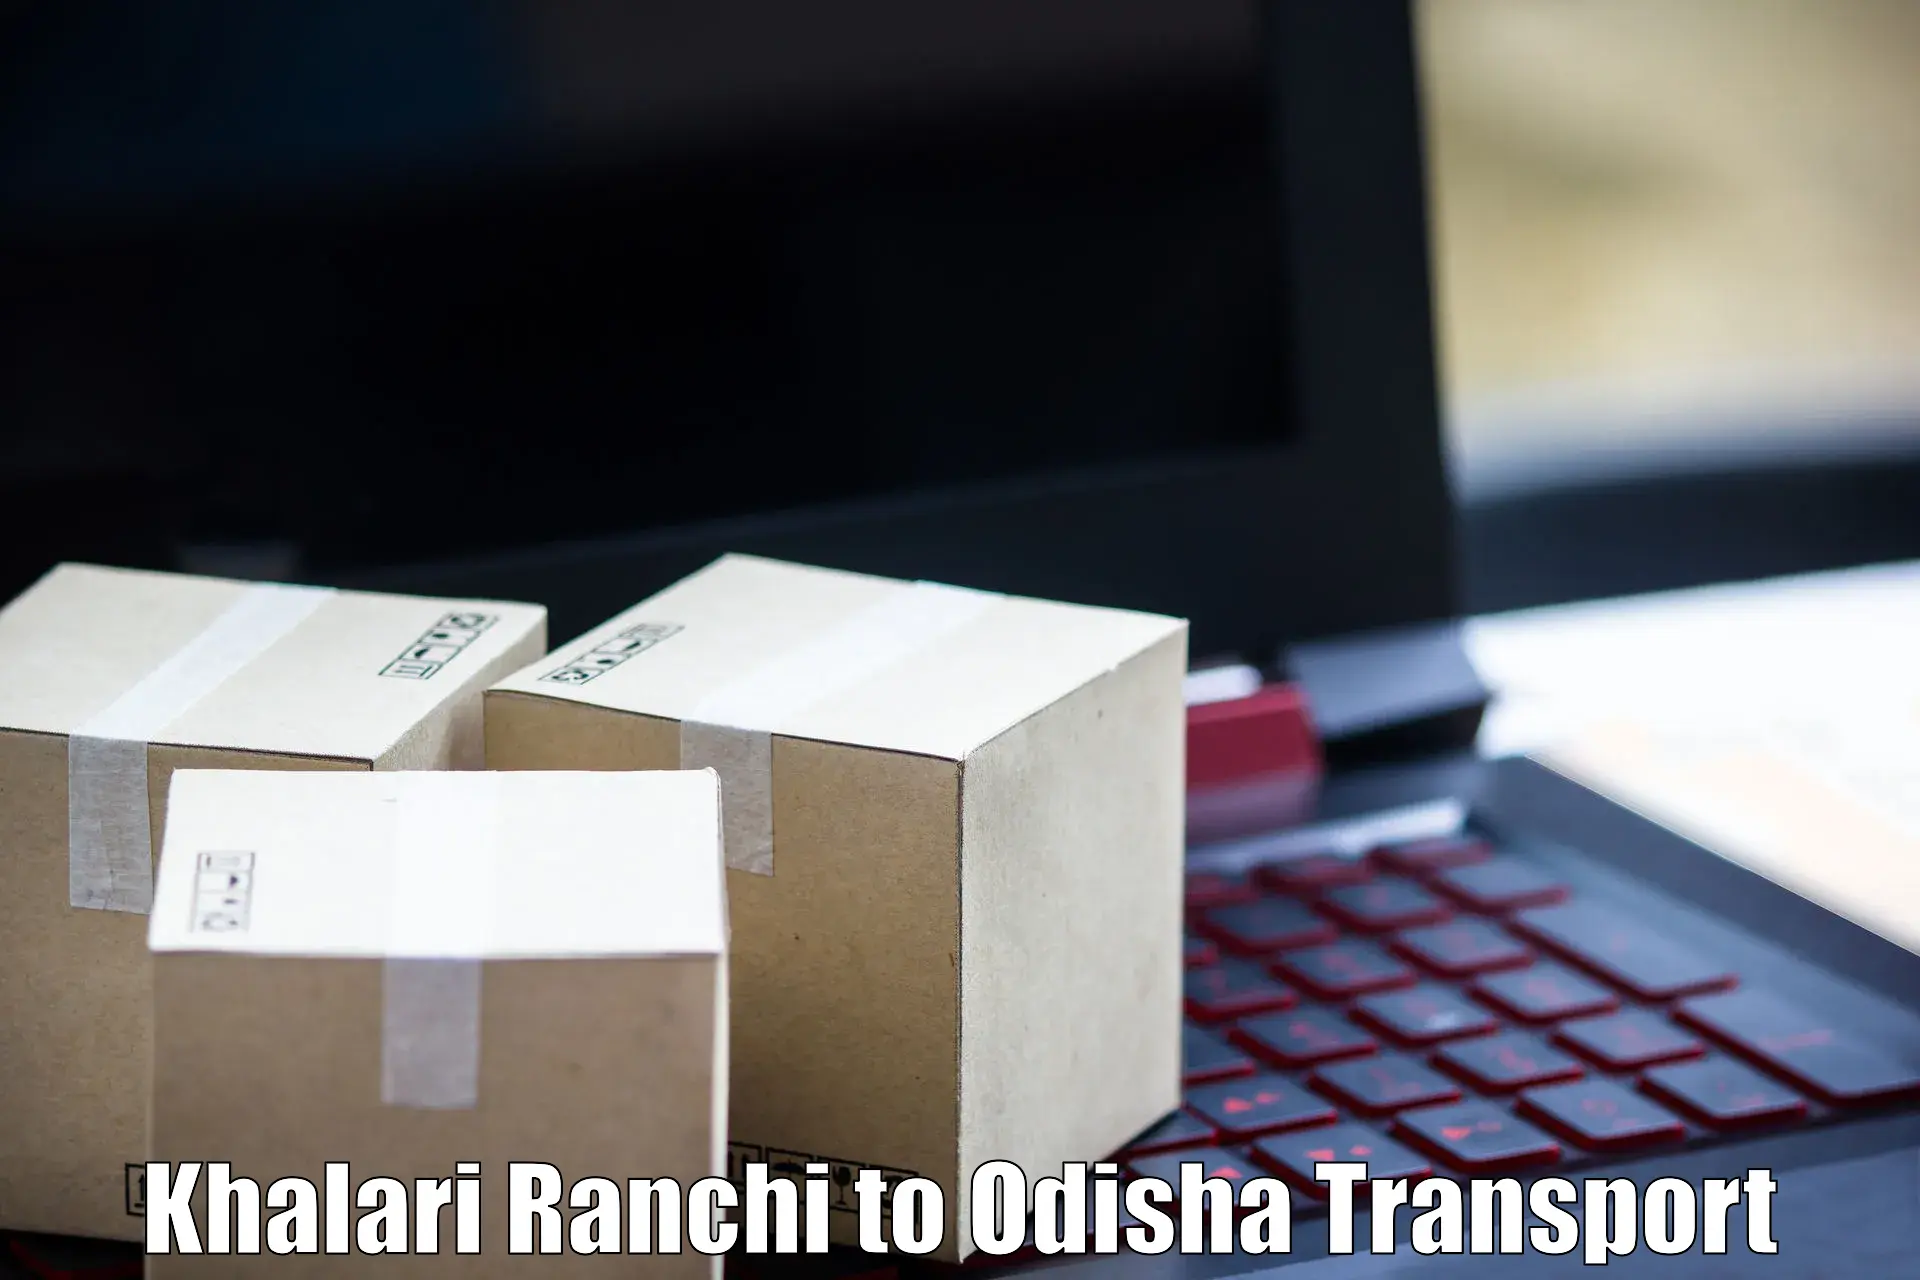 Road transport online services Khalari Ranchi to Bhubaneswar